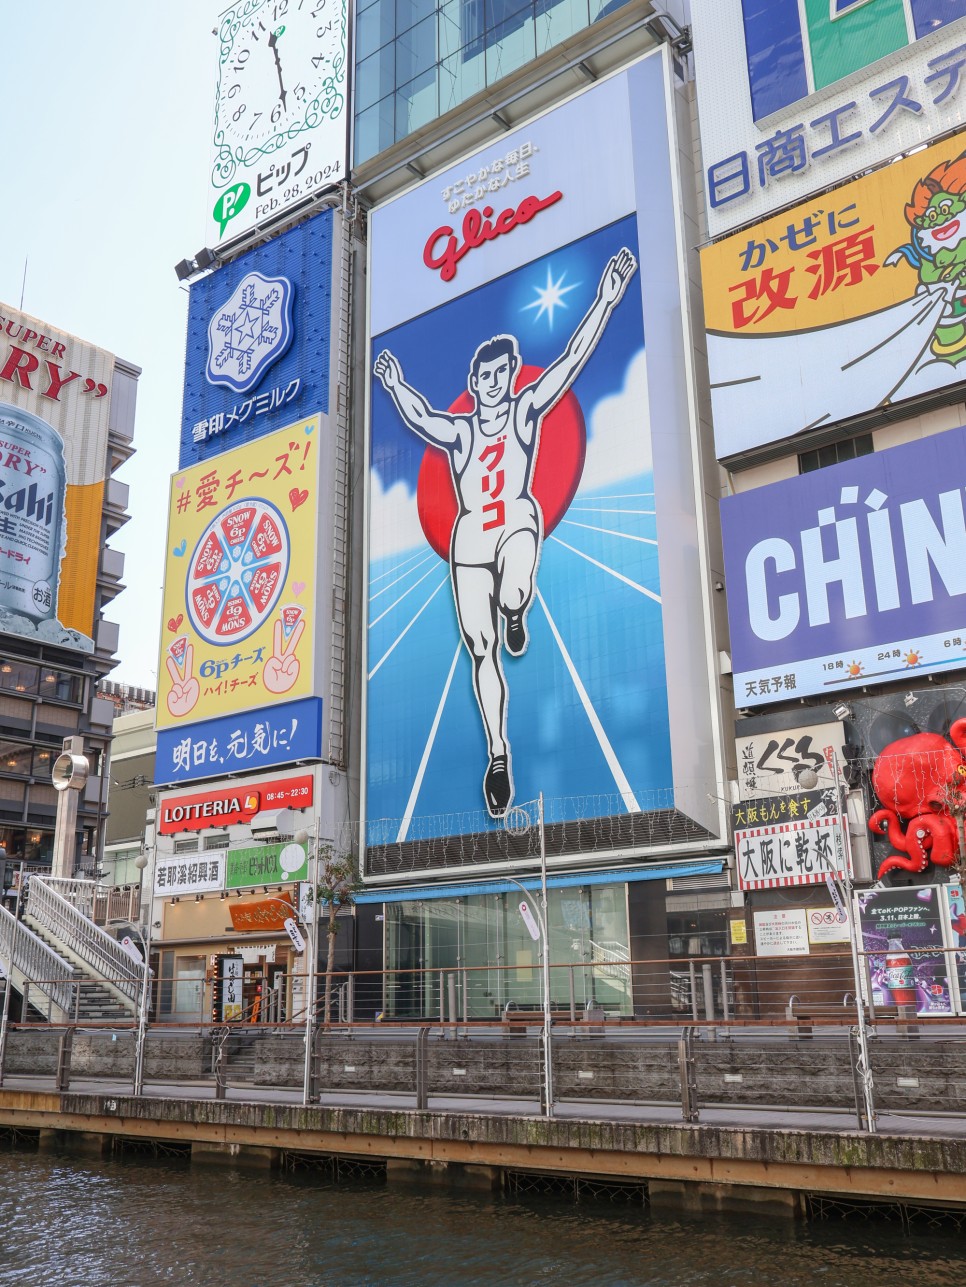 3월 해외여행추천 실시간 오사카 날씨 옷차림 feat. 일본포켓와이파이 도시락